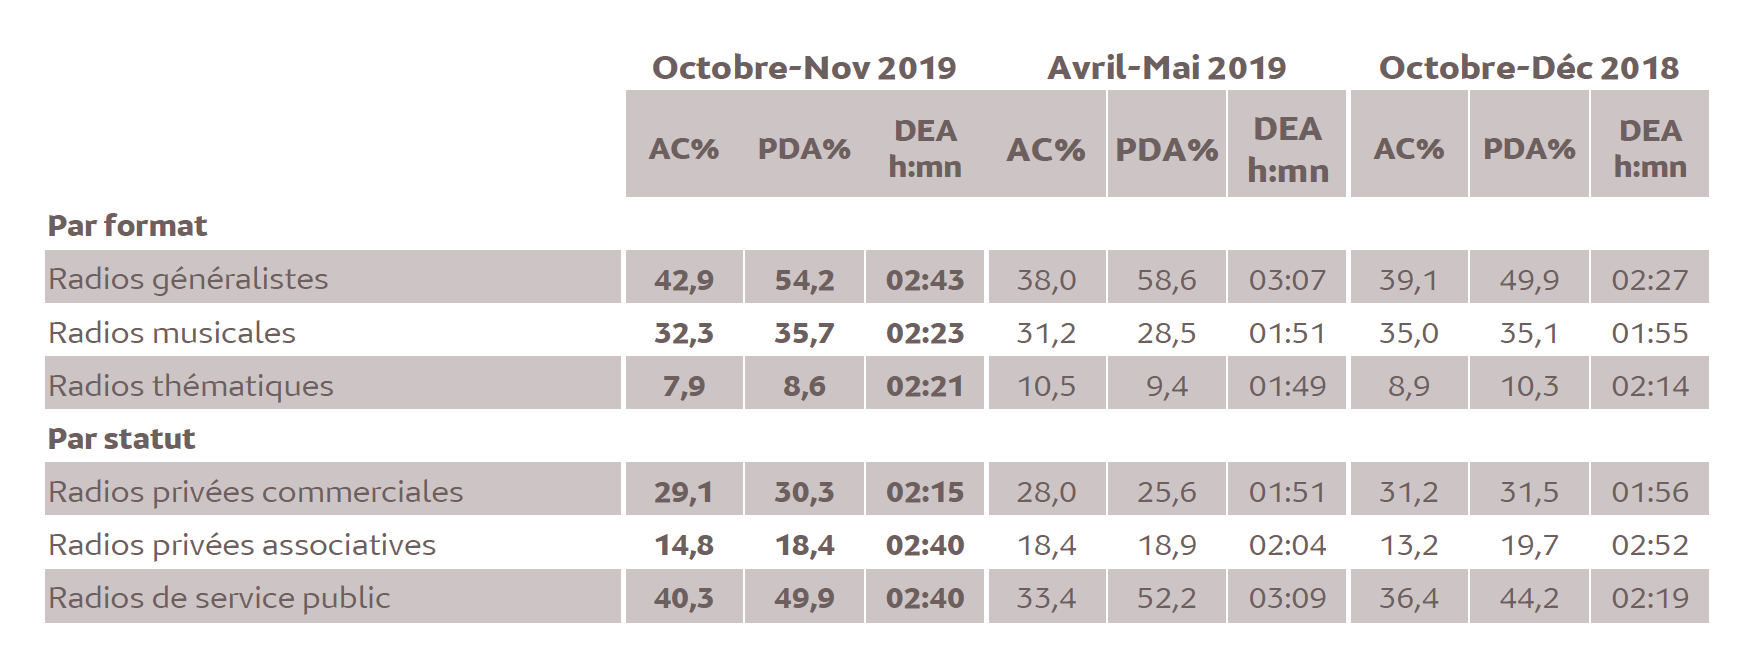 Source : Médiamétrie -Métridom Guyane Octobre-Novembre 2019 -13 ans et plus -Copyright Médiamétrie -Tous droits réservés